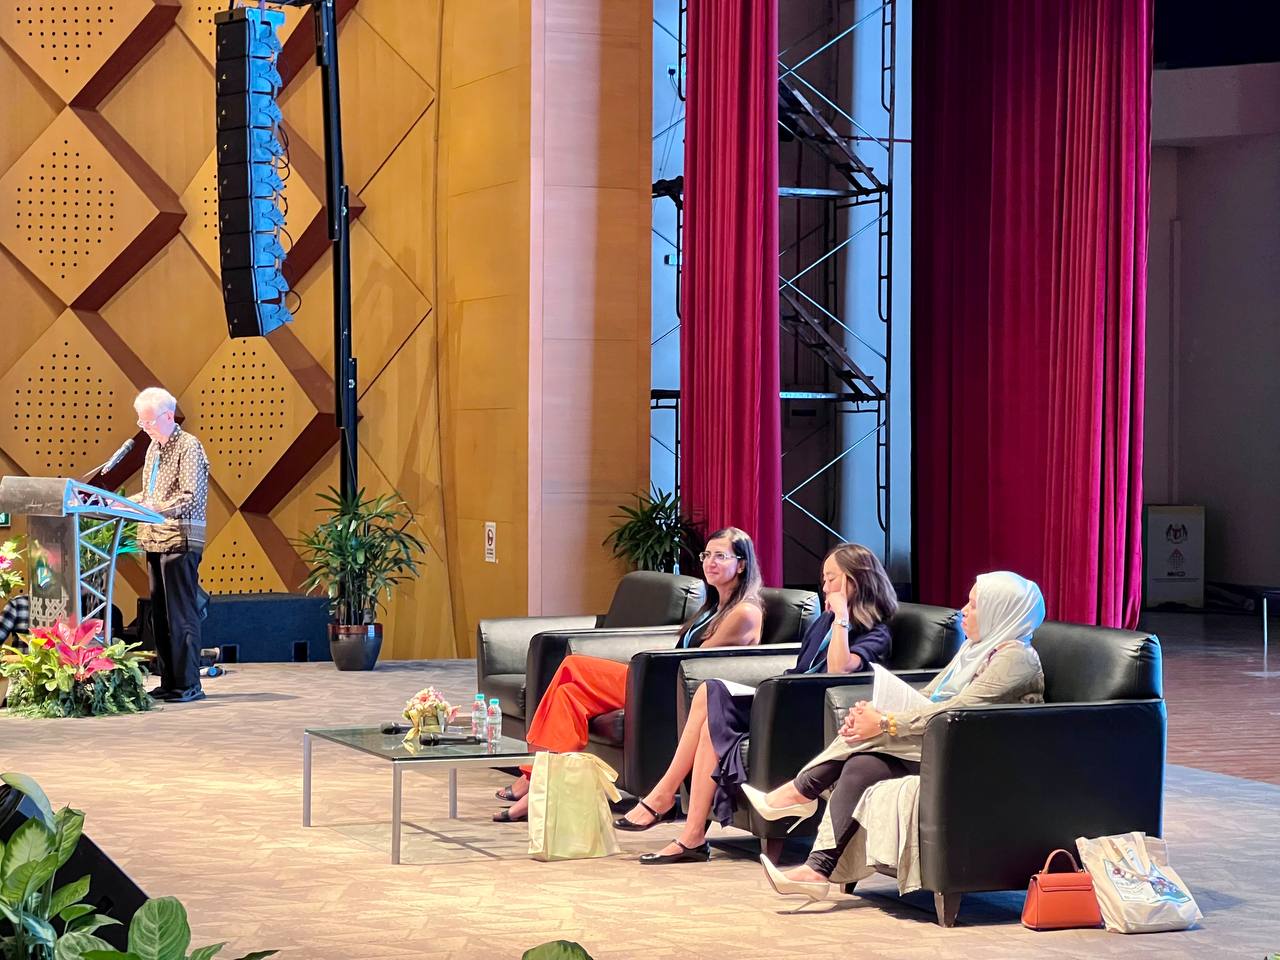 Открылся 38-й Всемирный конгресс Международного совета по детской книге в Малайзии